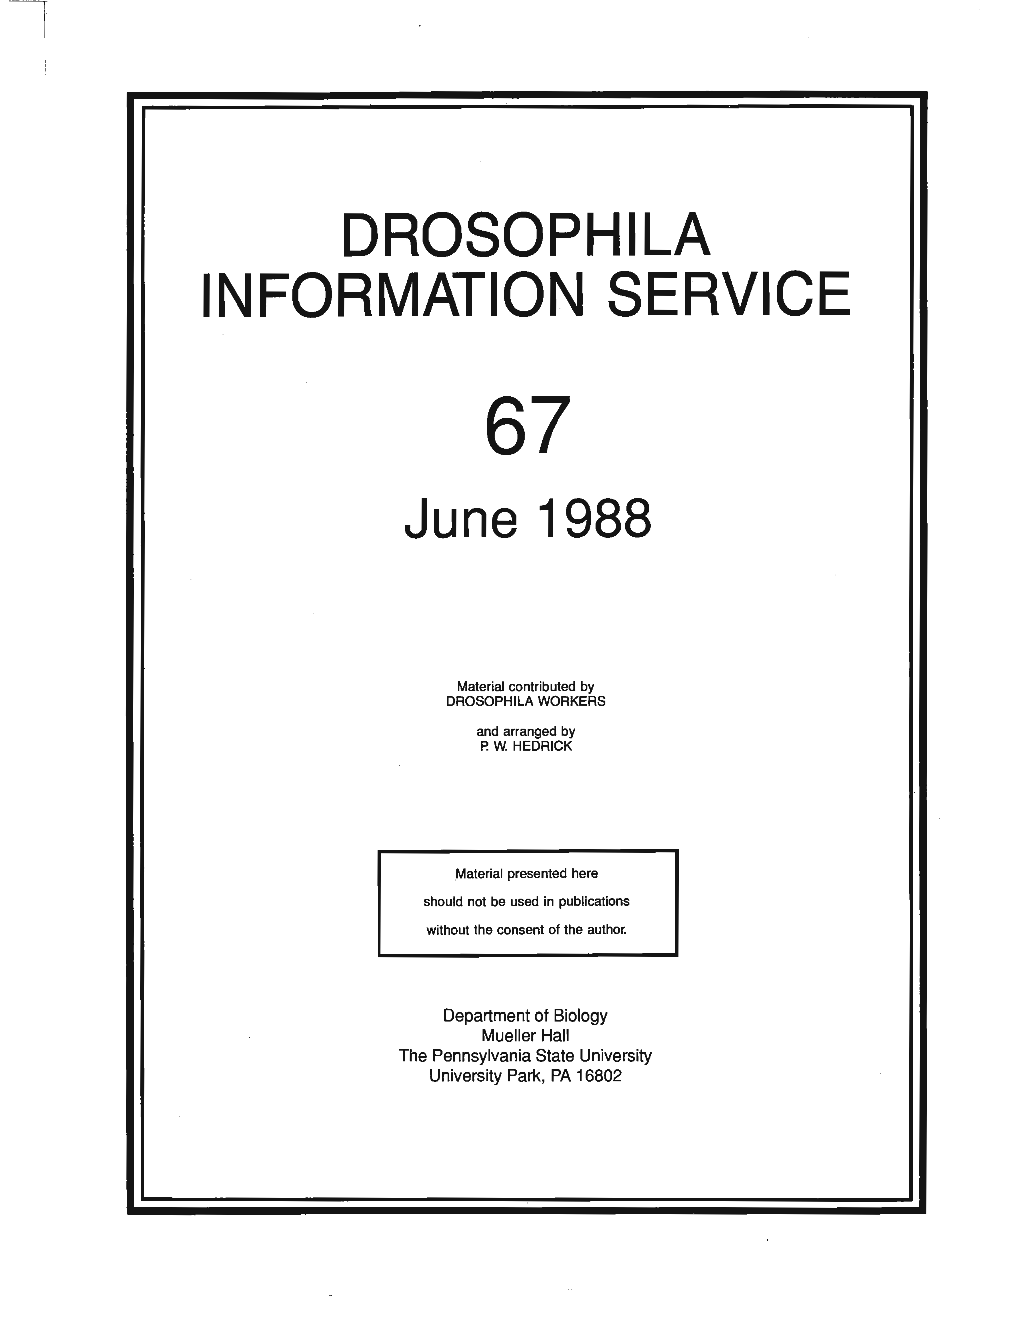 DROSOPHILA INFORMATION SERVICE June 1988